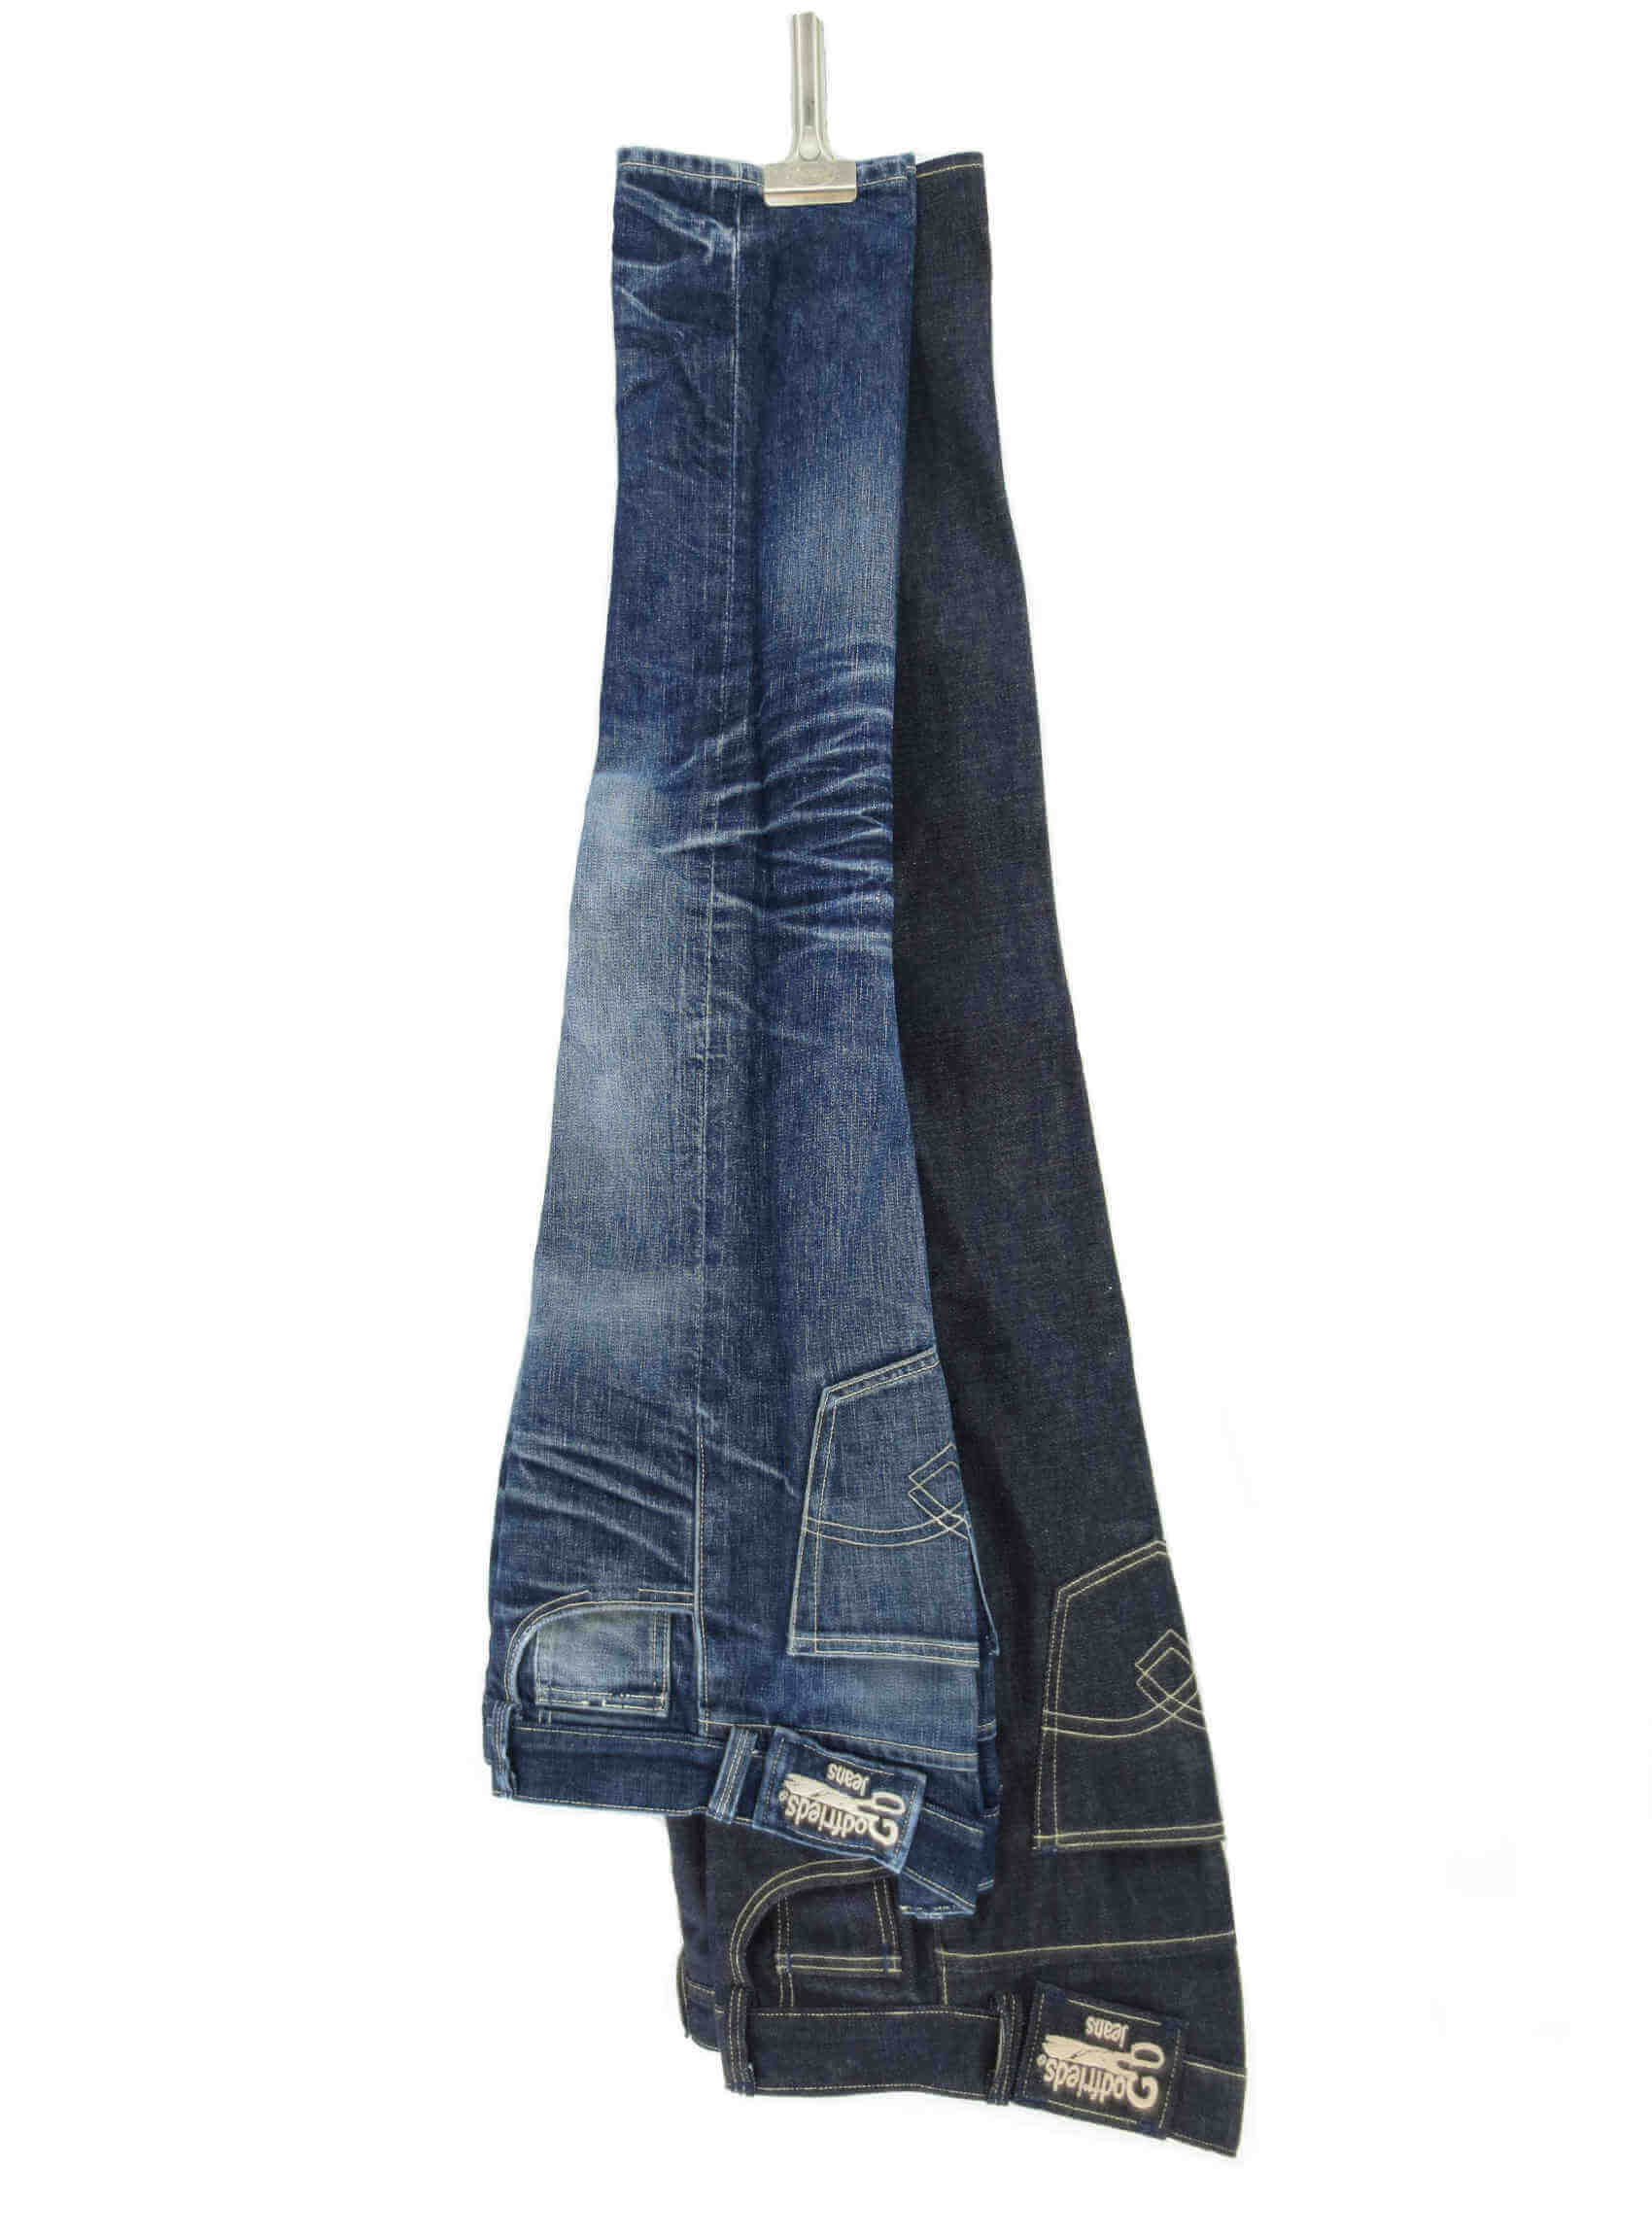 Raw et usé 1 ans Godfrieds jeans